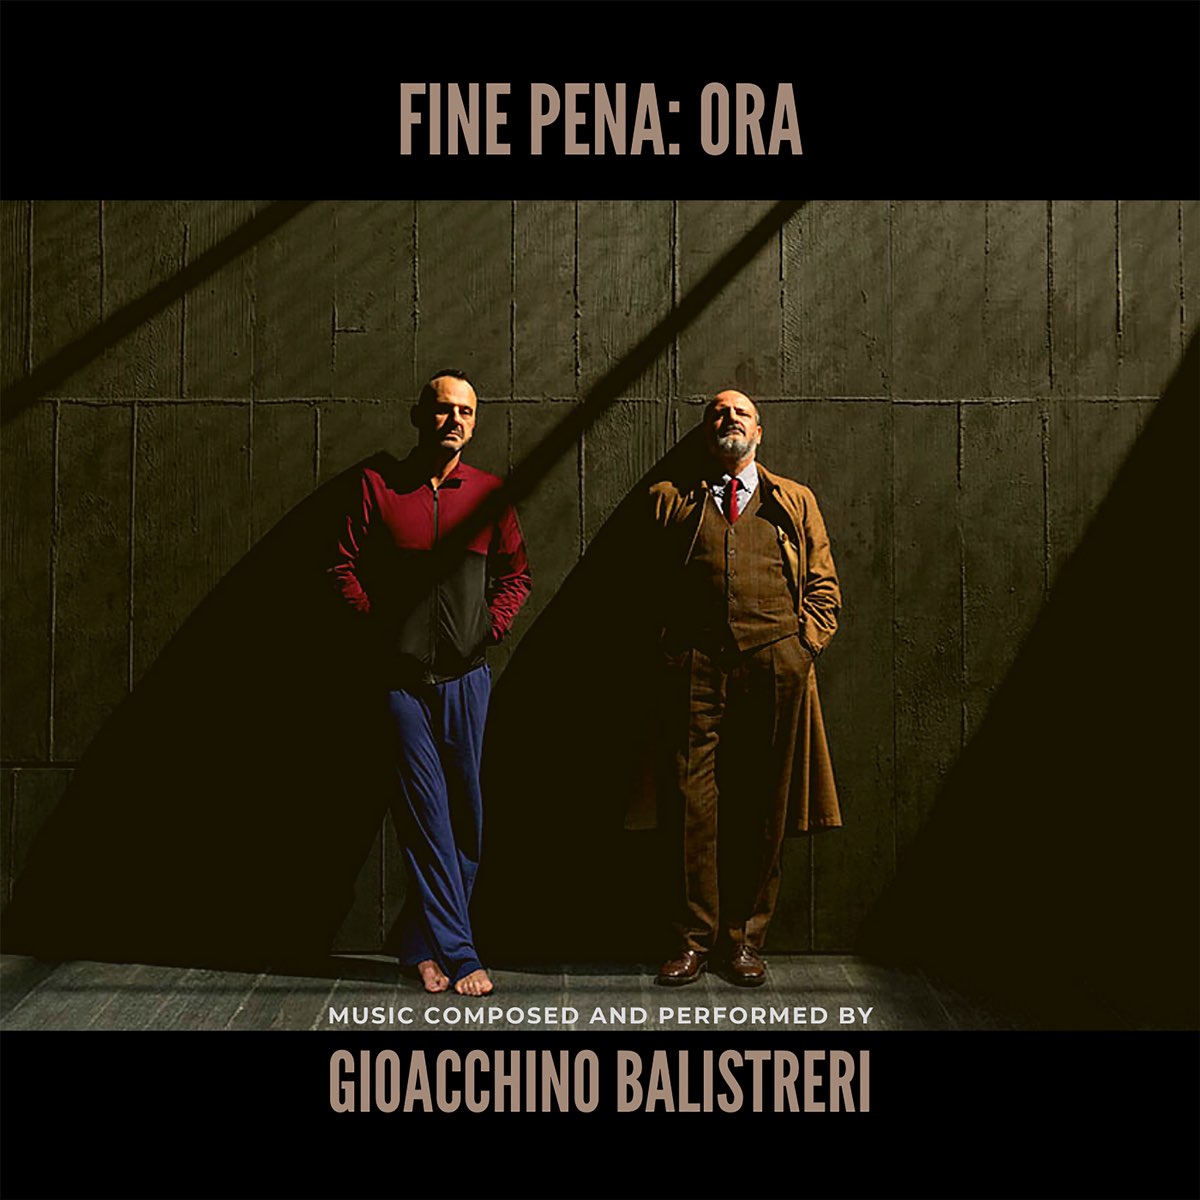 Fine pena: ora - Album by Gioacchino Balistreri - Apple Music